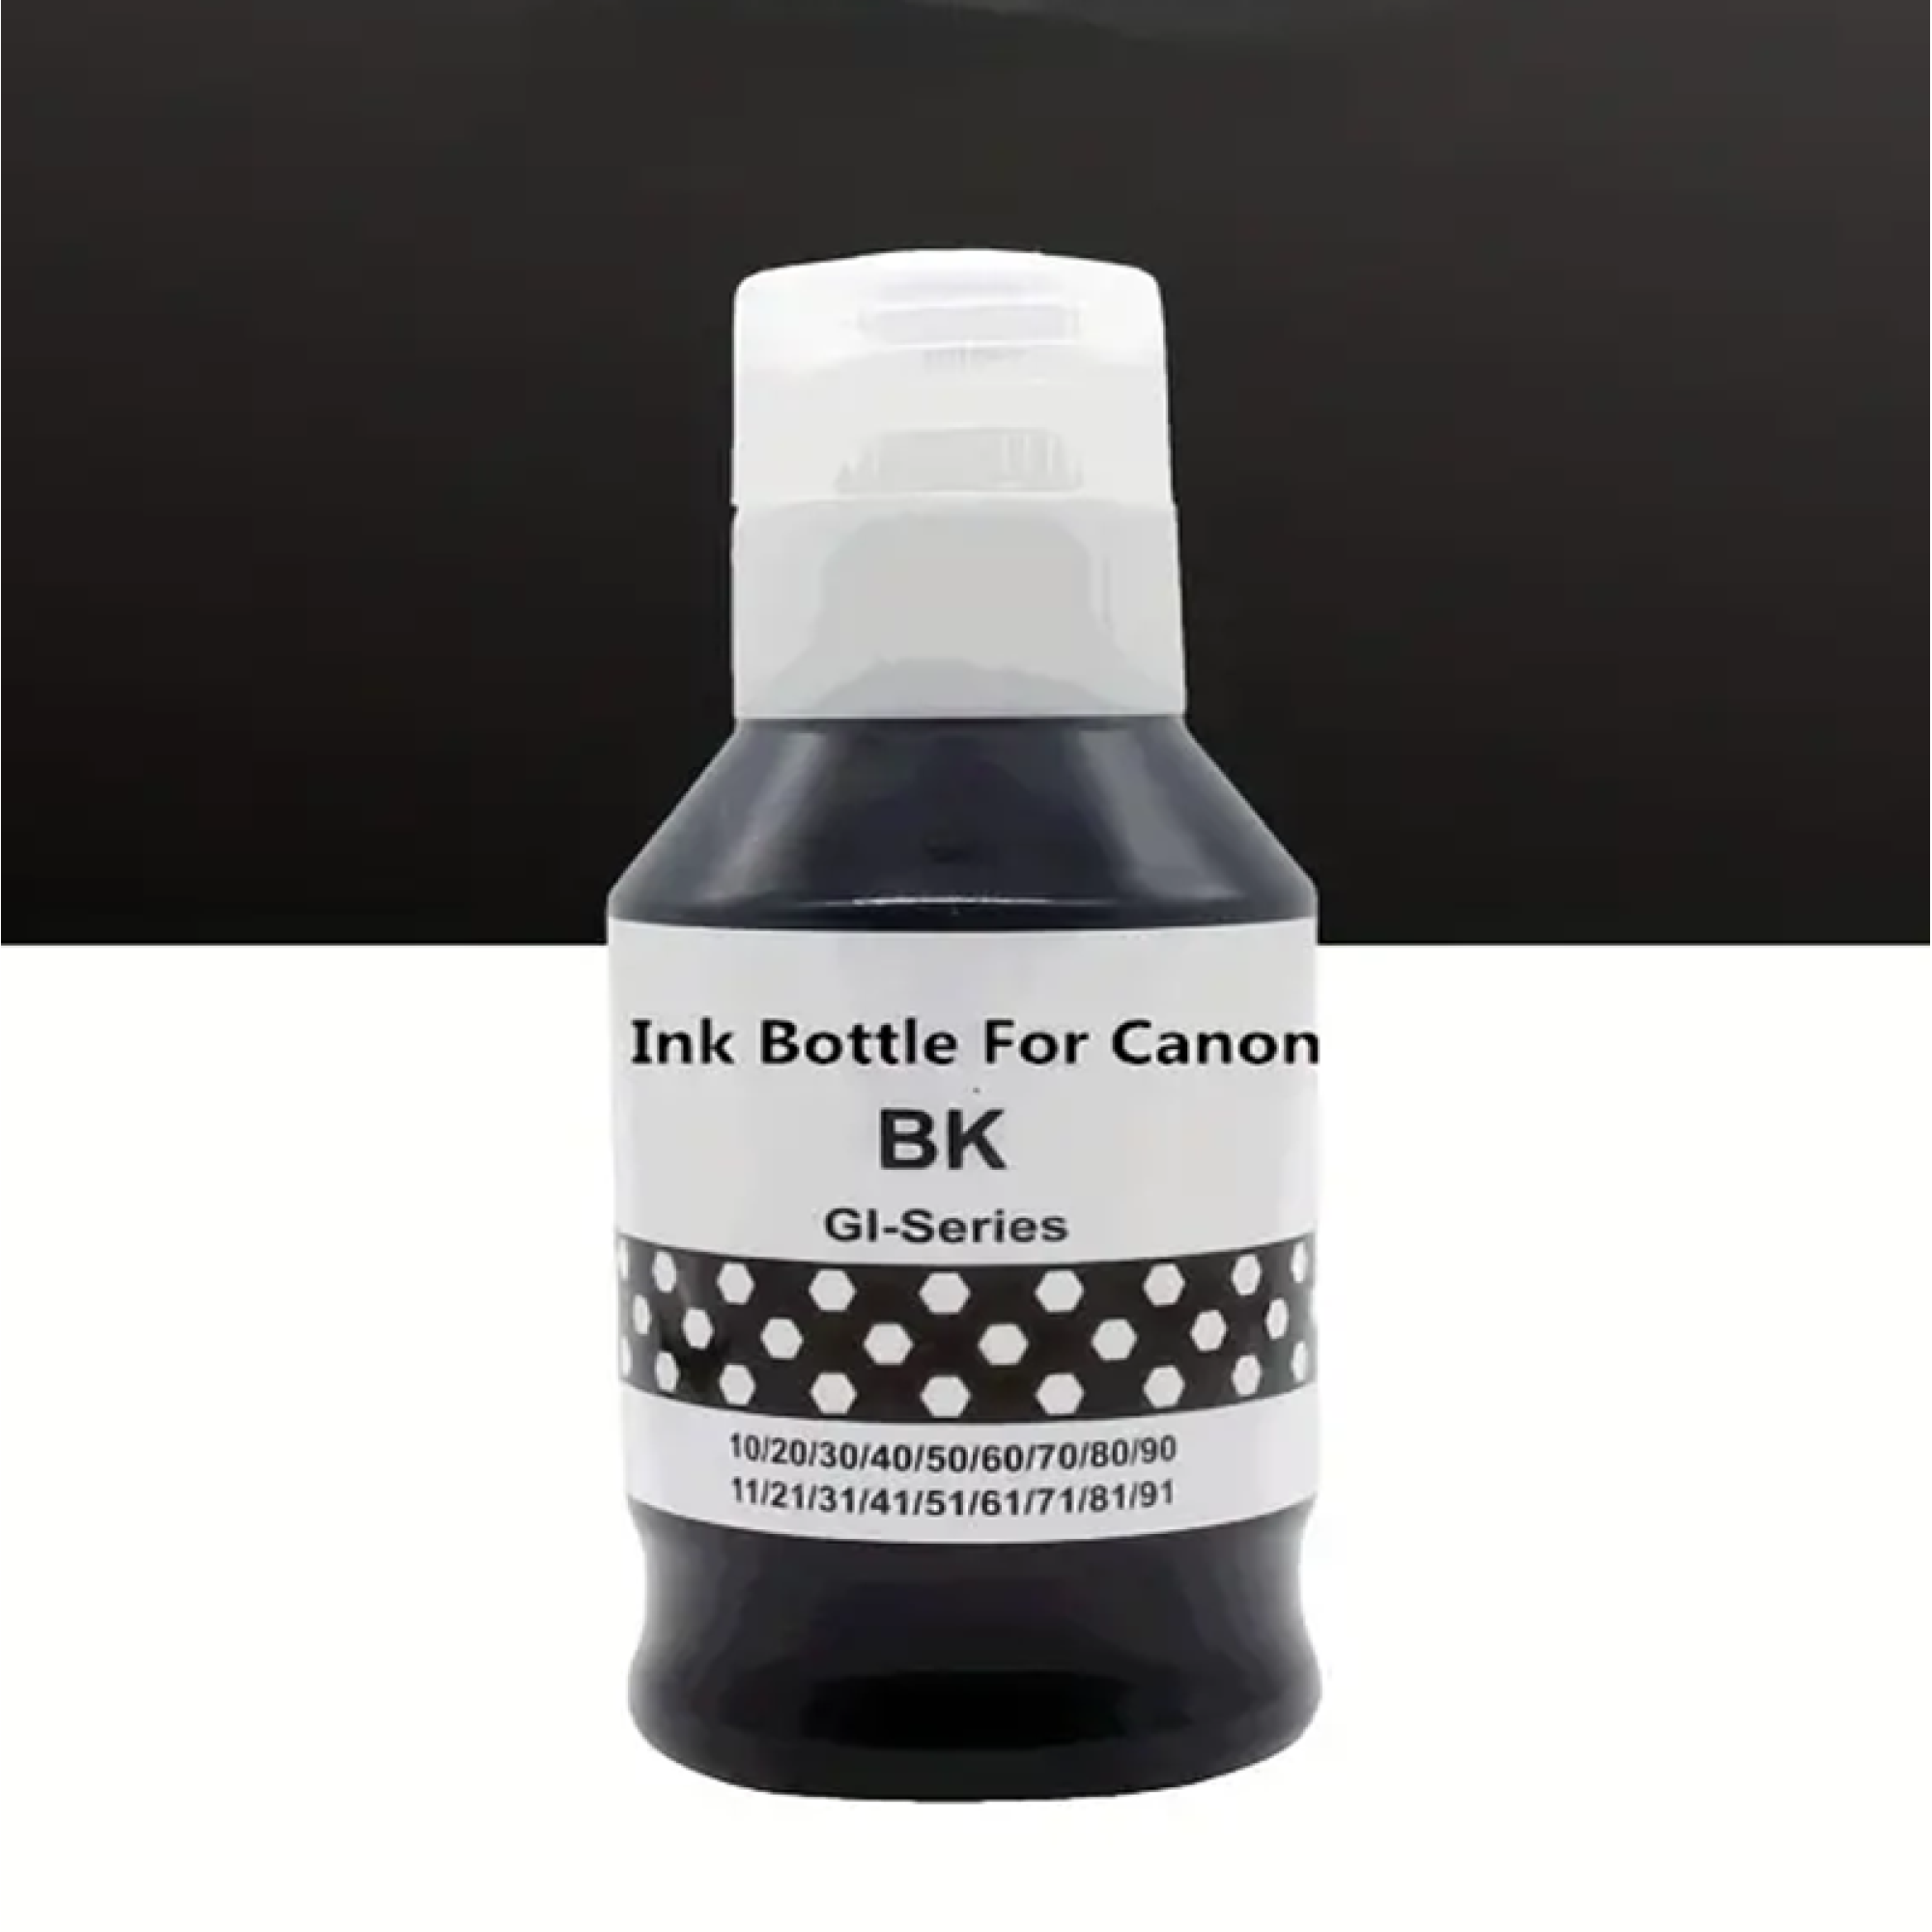 Dye Black Ink for Canon GI40 GI50 GI60 GI80 series compatible